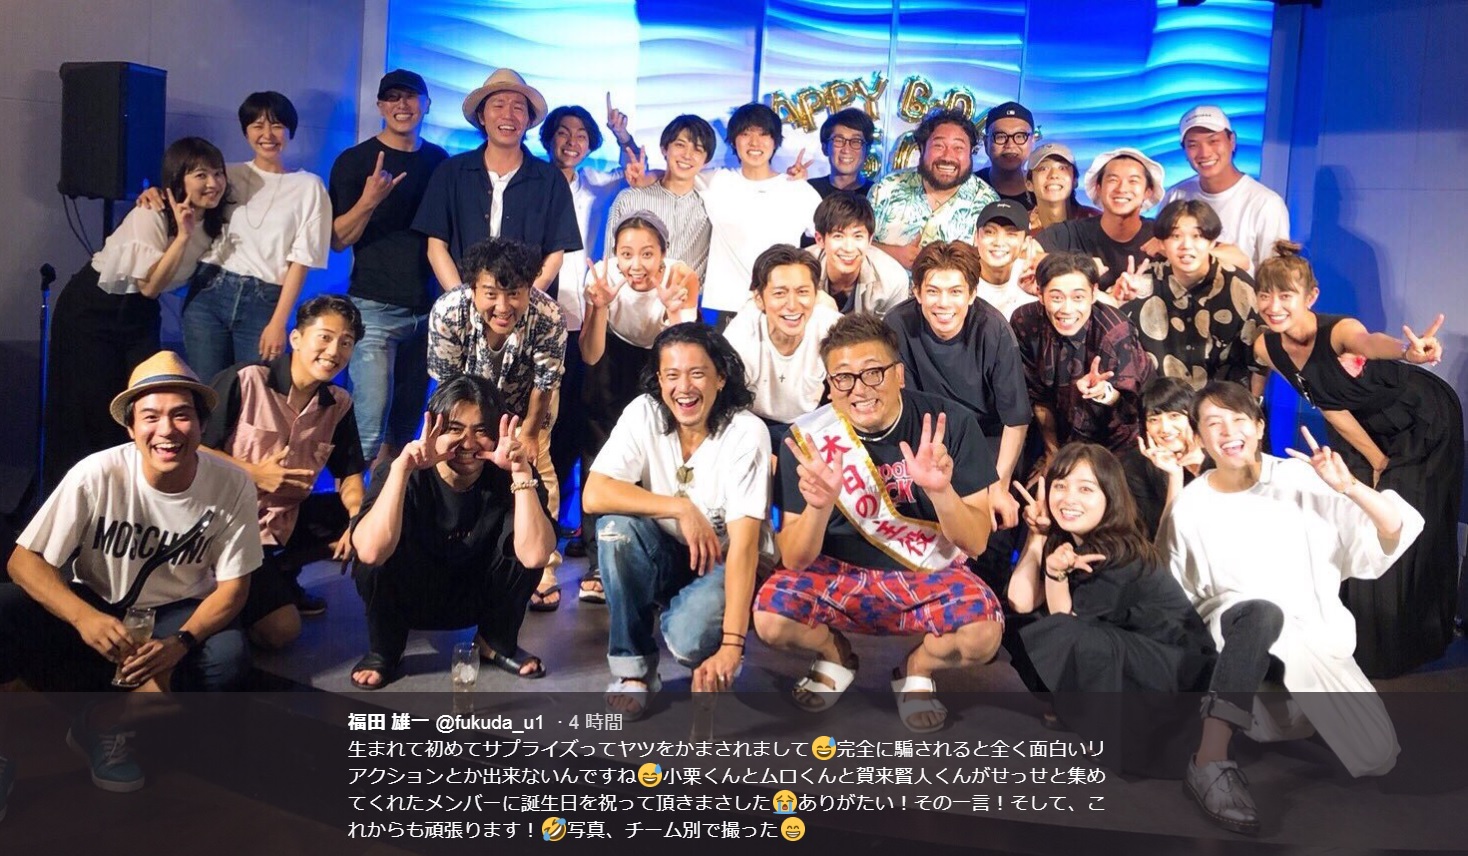 福田雄一監督の誕生日を祝おうと集まったメンバー（画像は『福田雄一　2018年7月20日付Twitter「生まれて初めてサプライズってヤツをかまされまして」』のスクリーンショット）